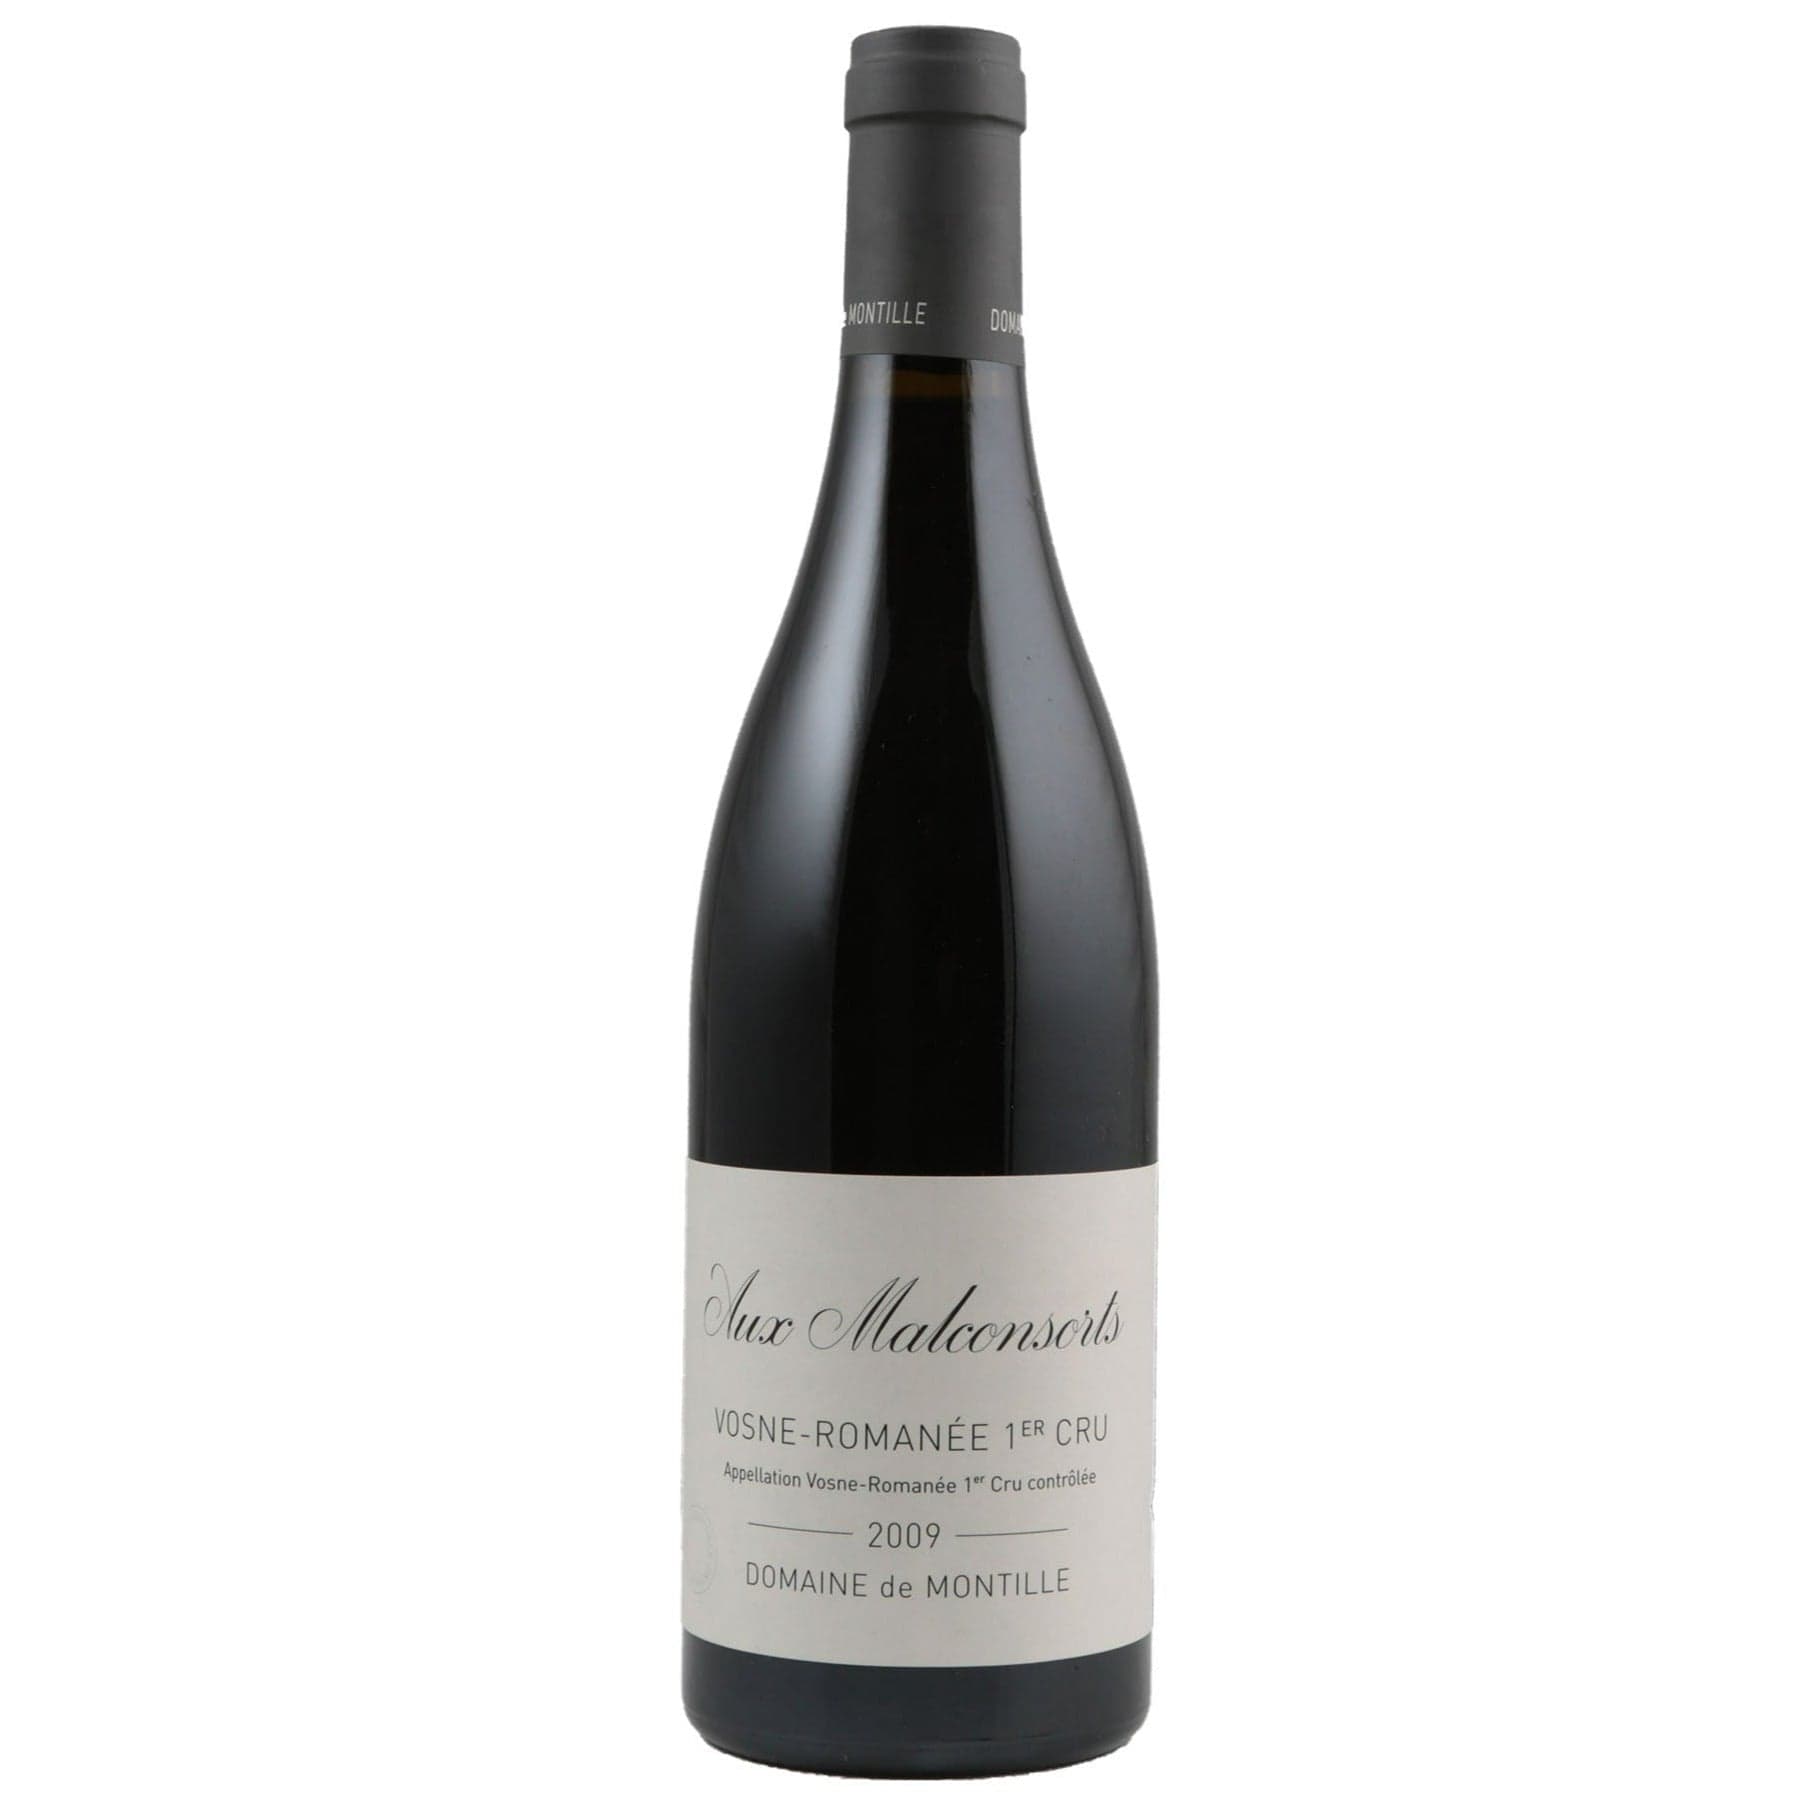 Single bottle of Red wine Dom. de Montille, Aux Malconsorts Premier Cru, Vosne-Romanee, 2009 100% Pinot Noir